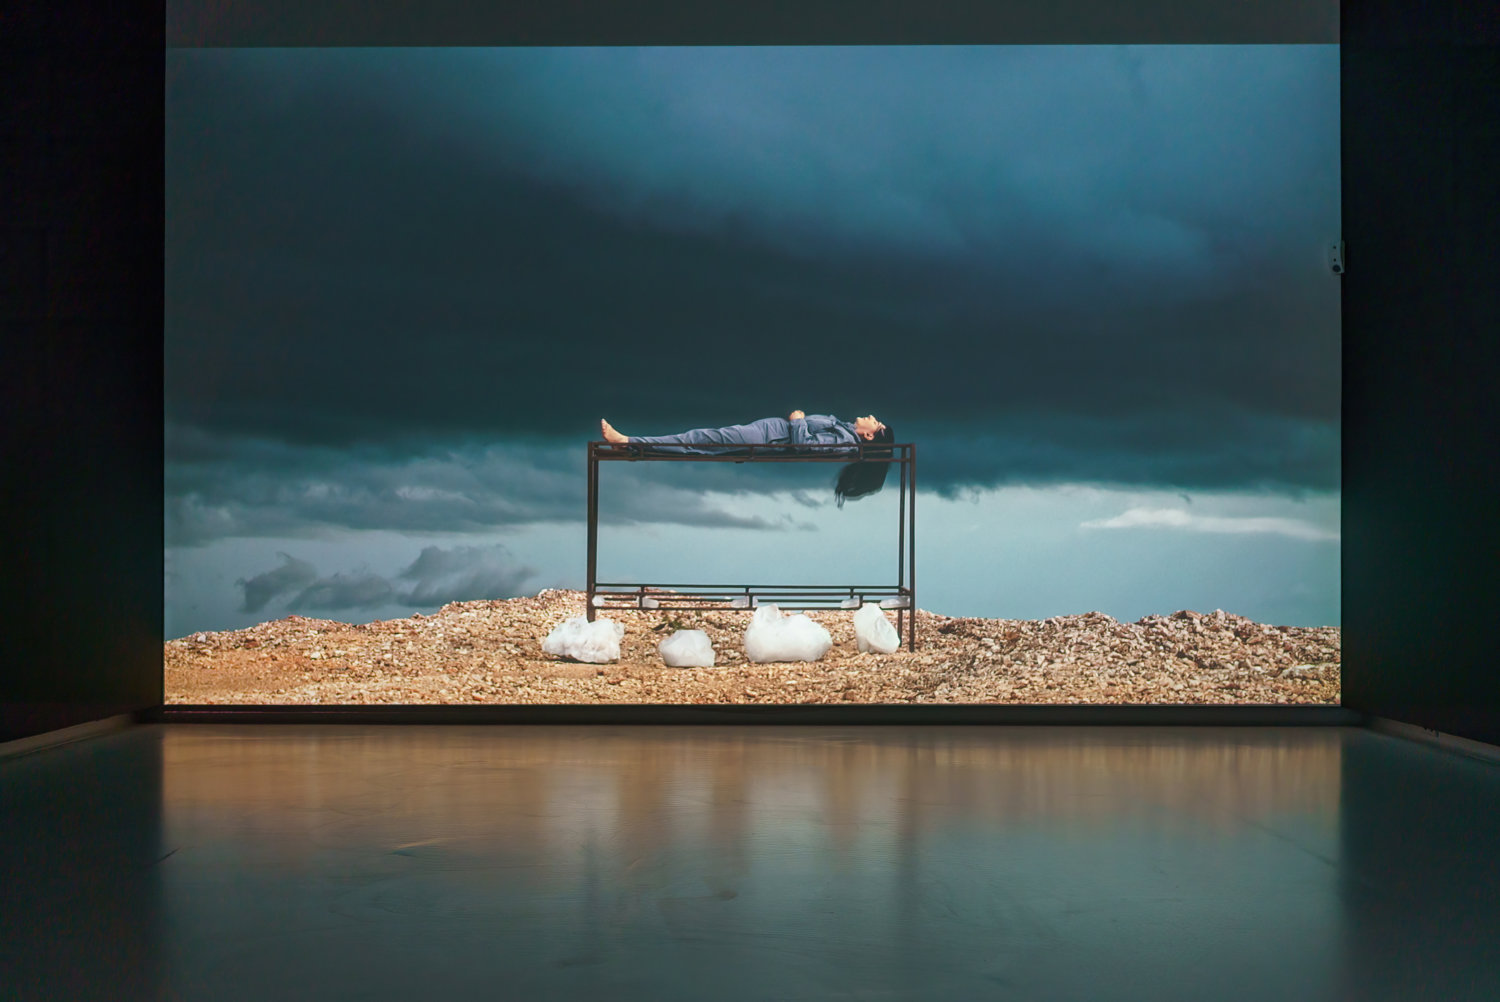 Große Videowand in einem Ausstellungsraum, die einen dunklen Himmel zeigt und eine Landschaft. Die Künstlerin Marina Abramovic liegt mit dem Rücken auf einem Gestell.